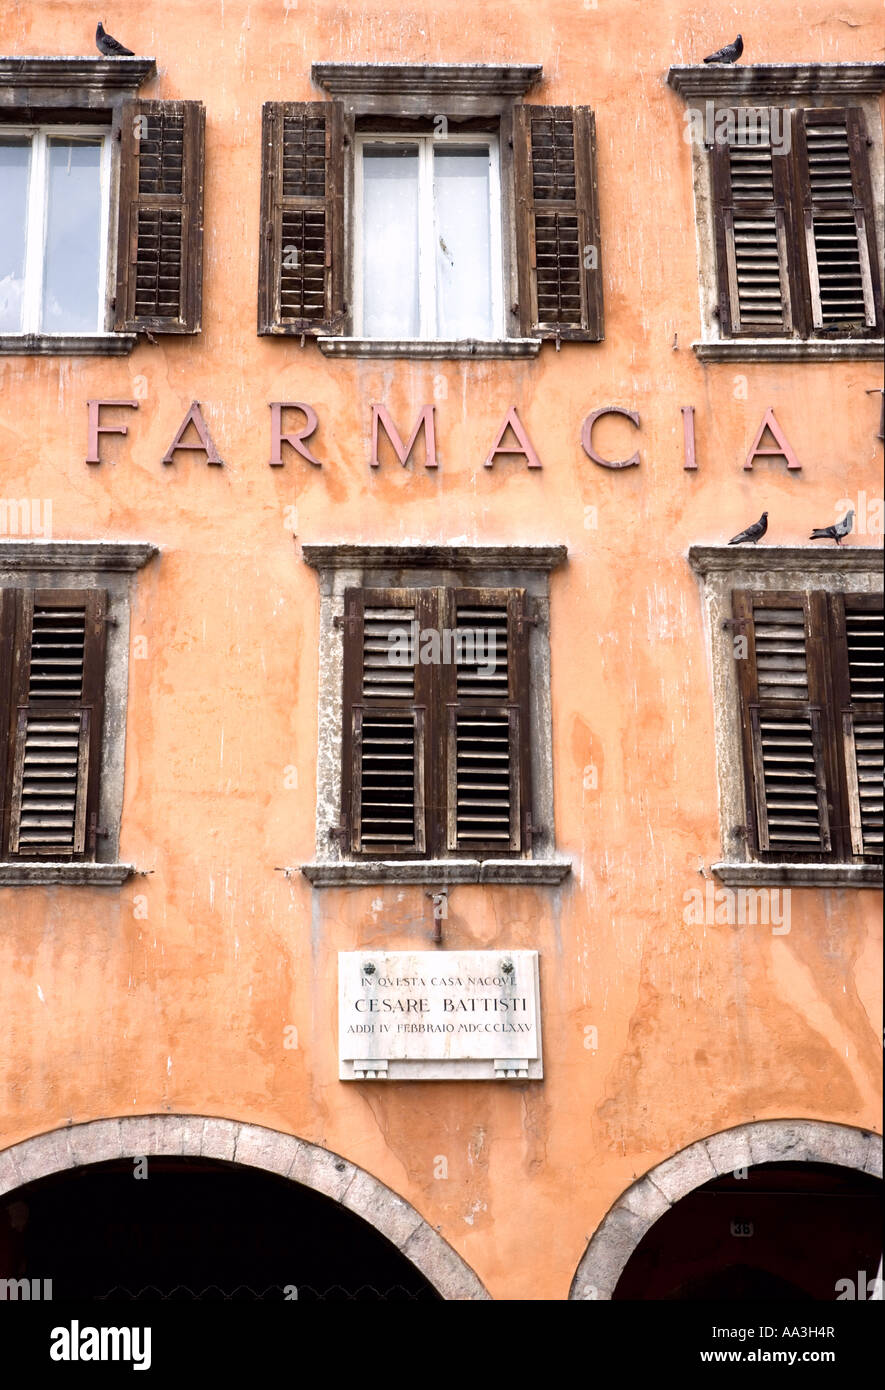 Farmacia and house of Cesare Battisti Trento Alto Adige Italy Stock Photo